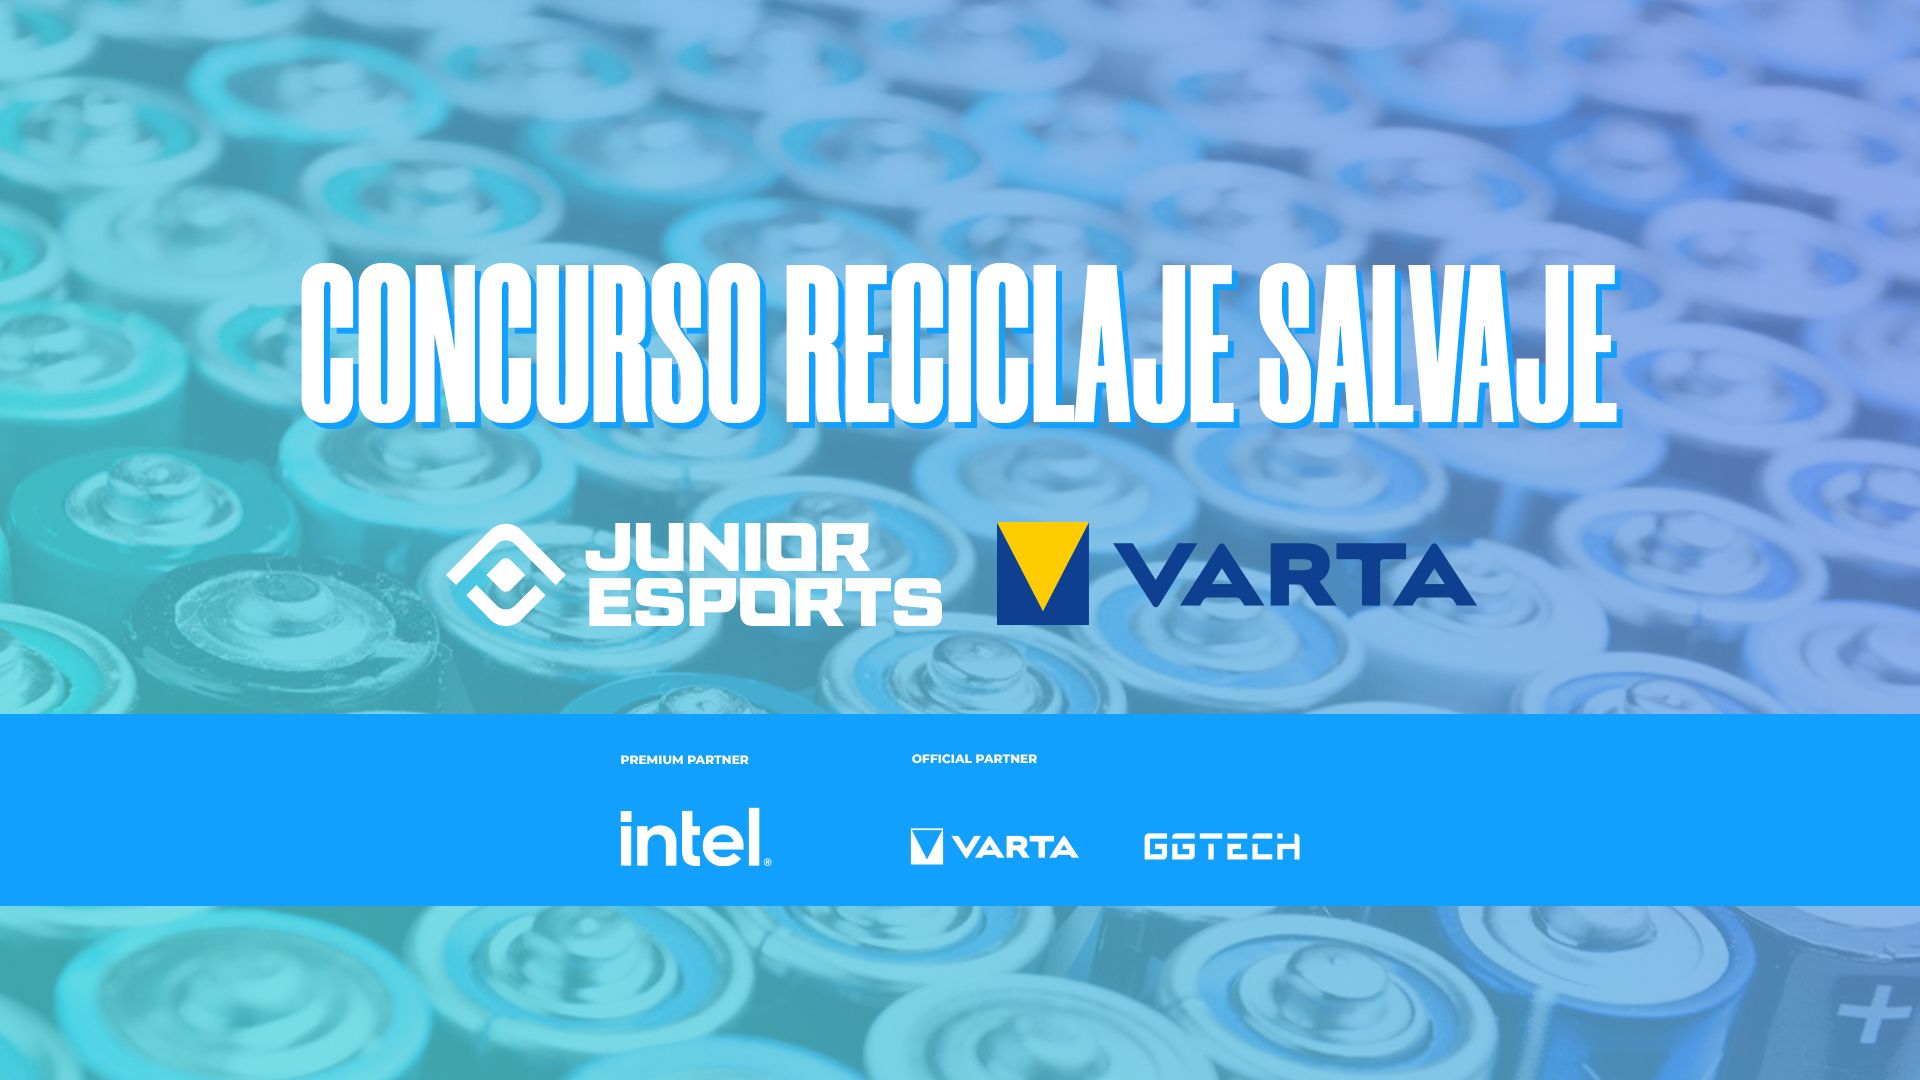 JUNIOR Esports y VARTA proclaman a los ganadores de su Concurso "Reciclaje Salvaje"